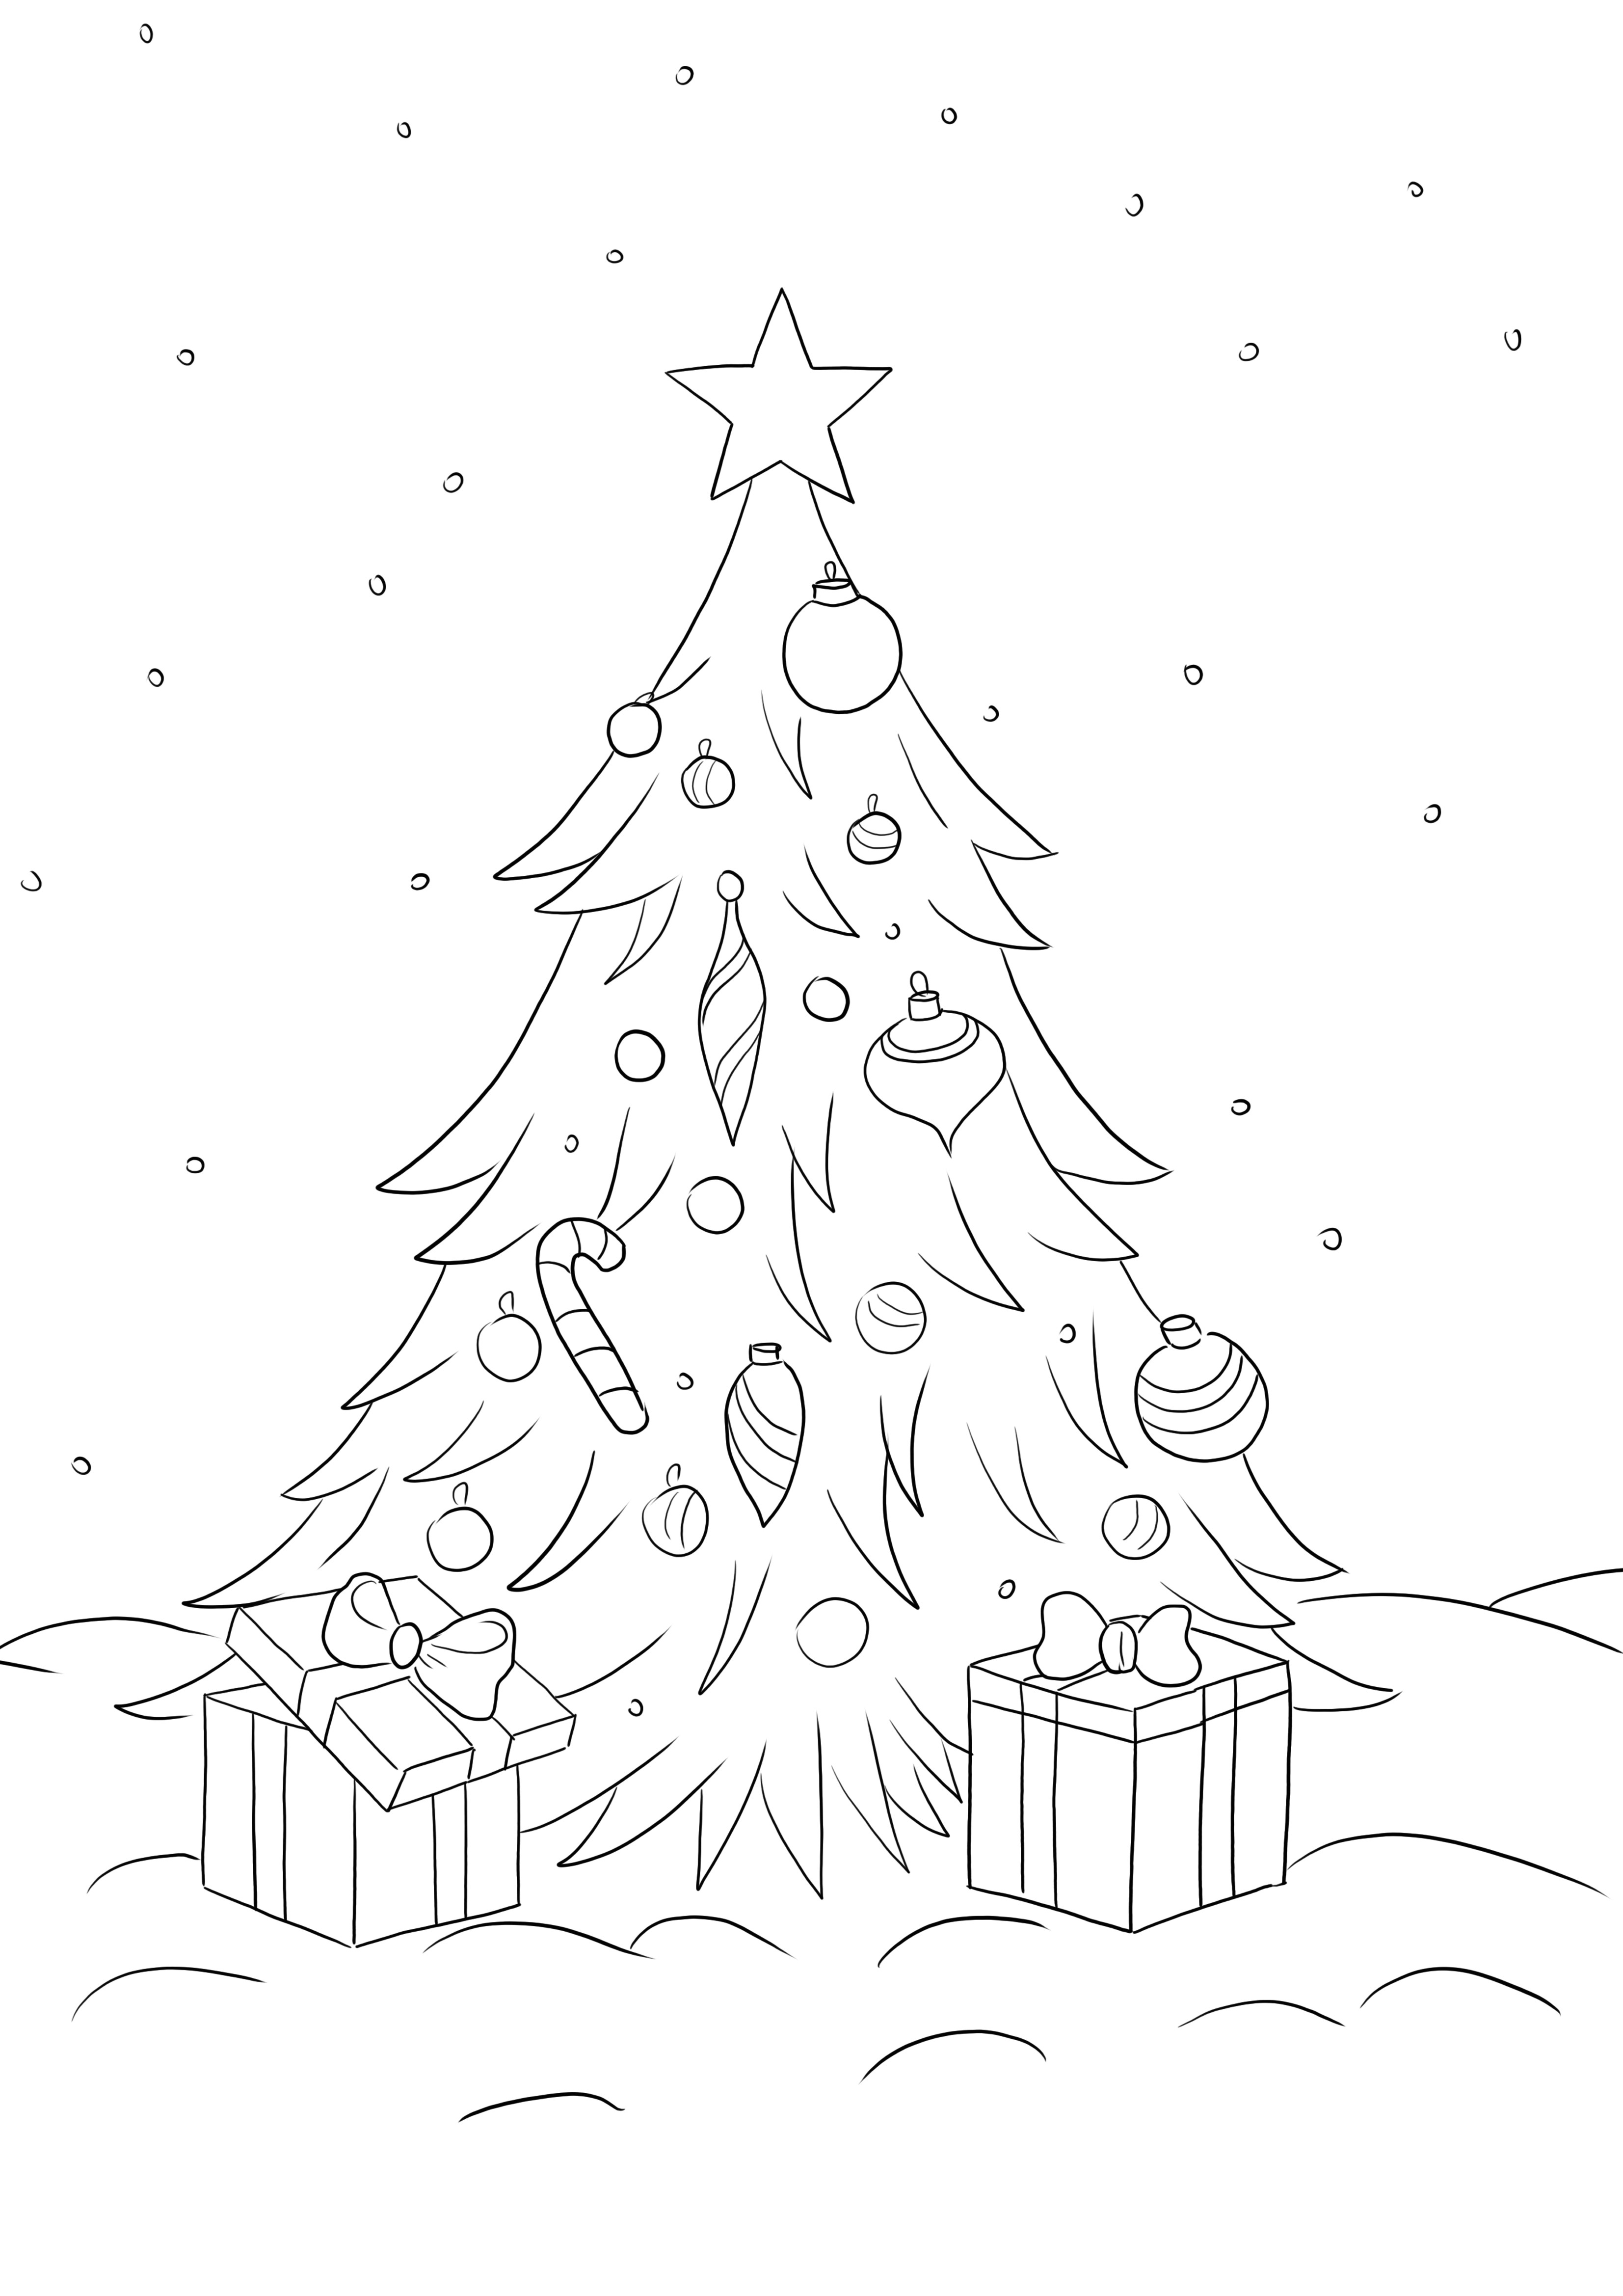 Pomul de Crăciun cu cadouri poate fi descărcat și colorat gratuit